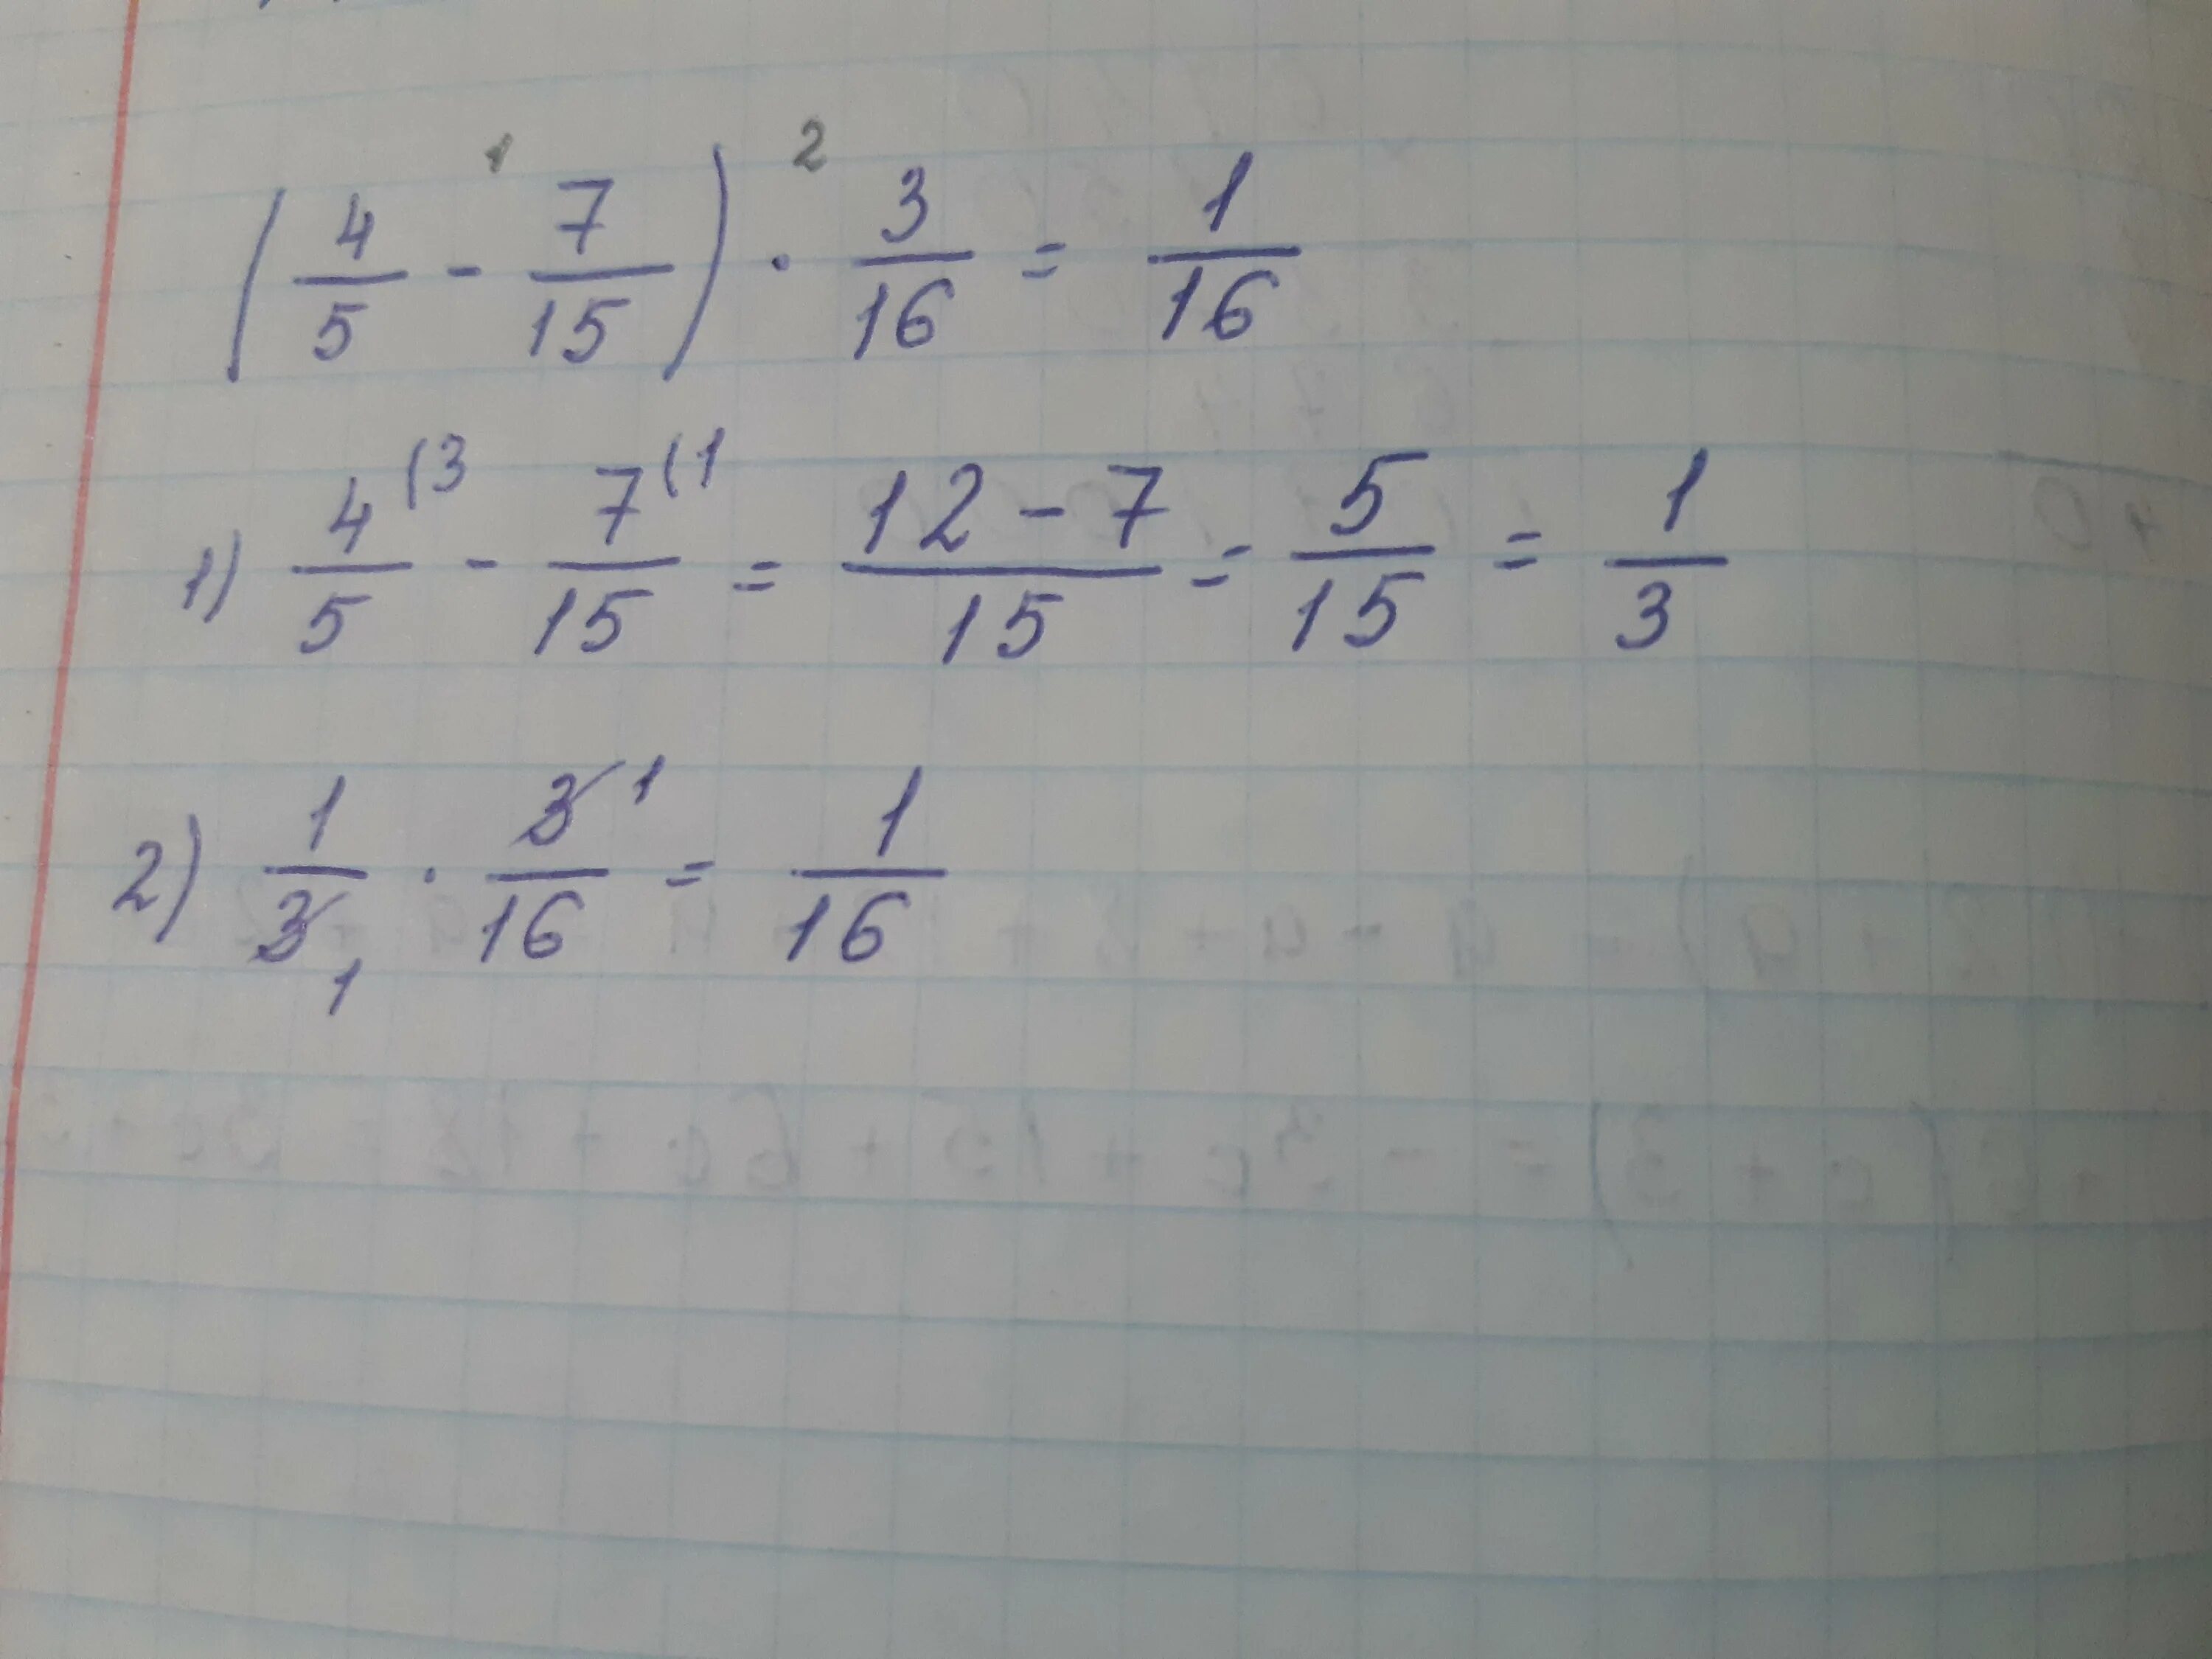 Вычисли 15 5 3 16. Вычислите 4,4-4,15. Вычислить 10^-4. Вычислите (4-i)(4+i)-(3+3i)+6. Вычислите 4.167.164.323.2.